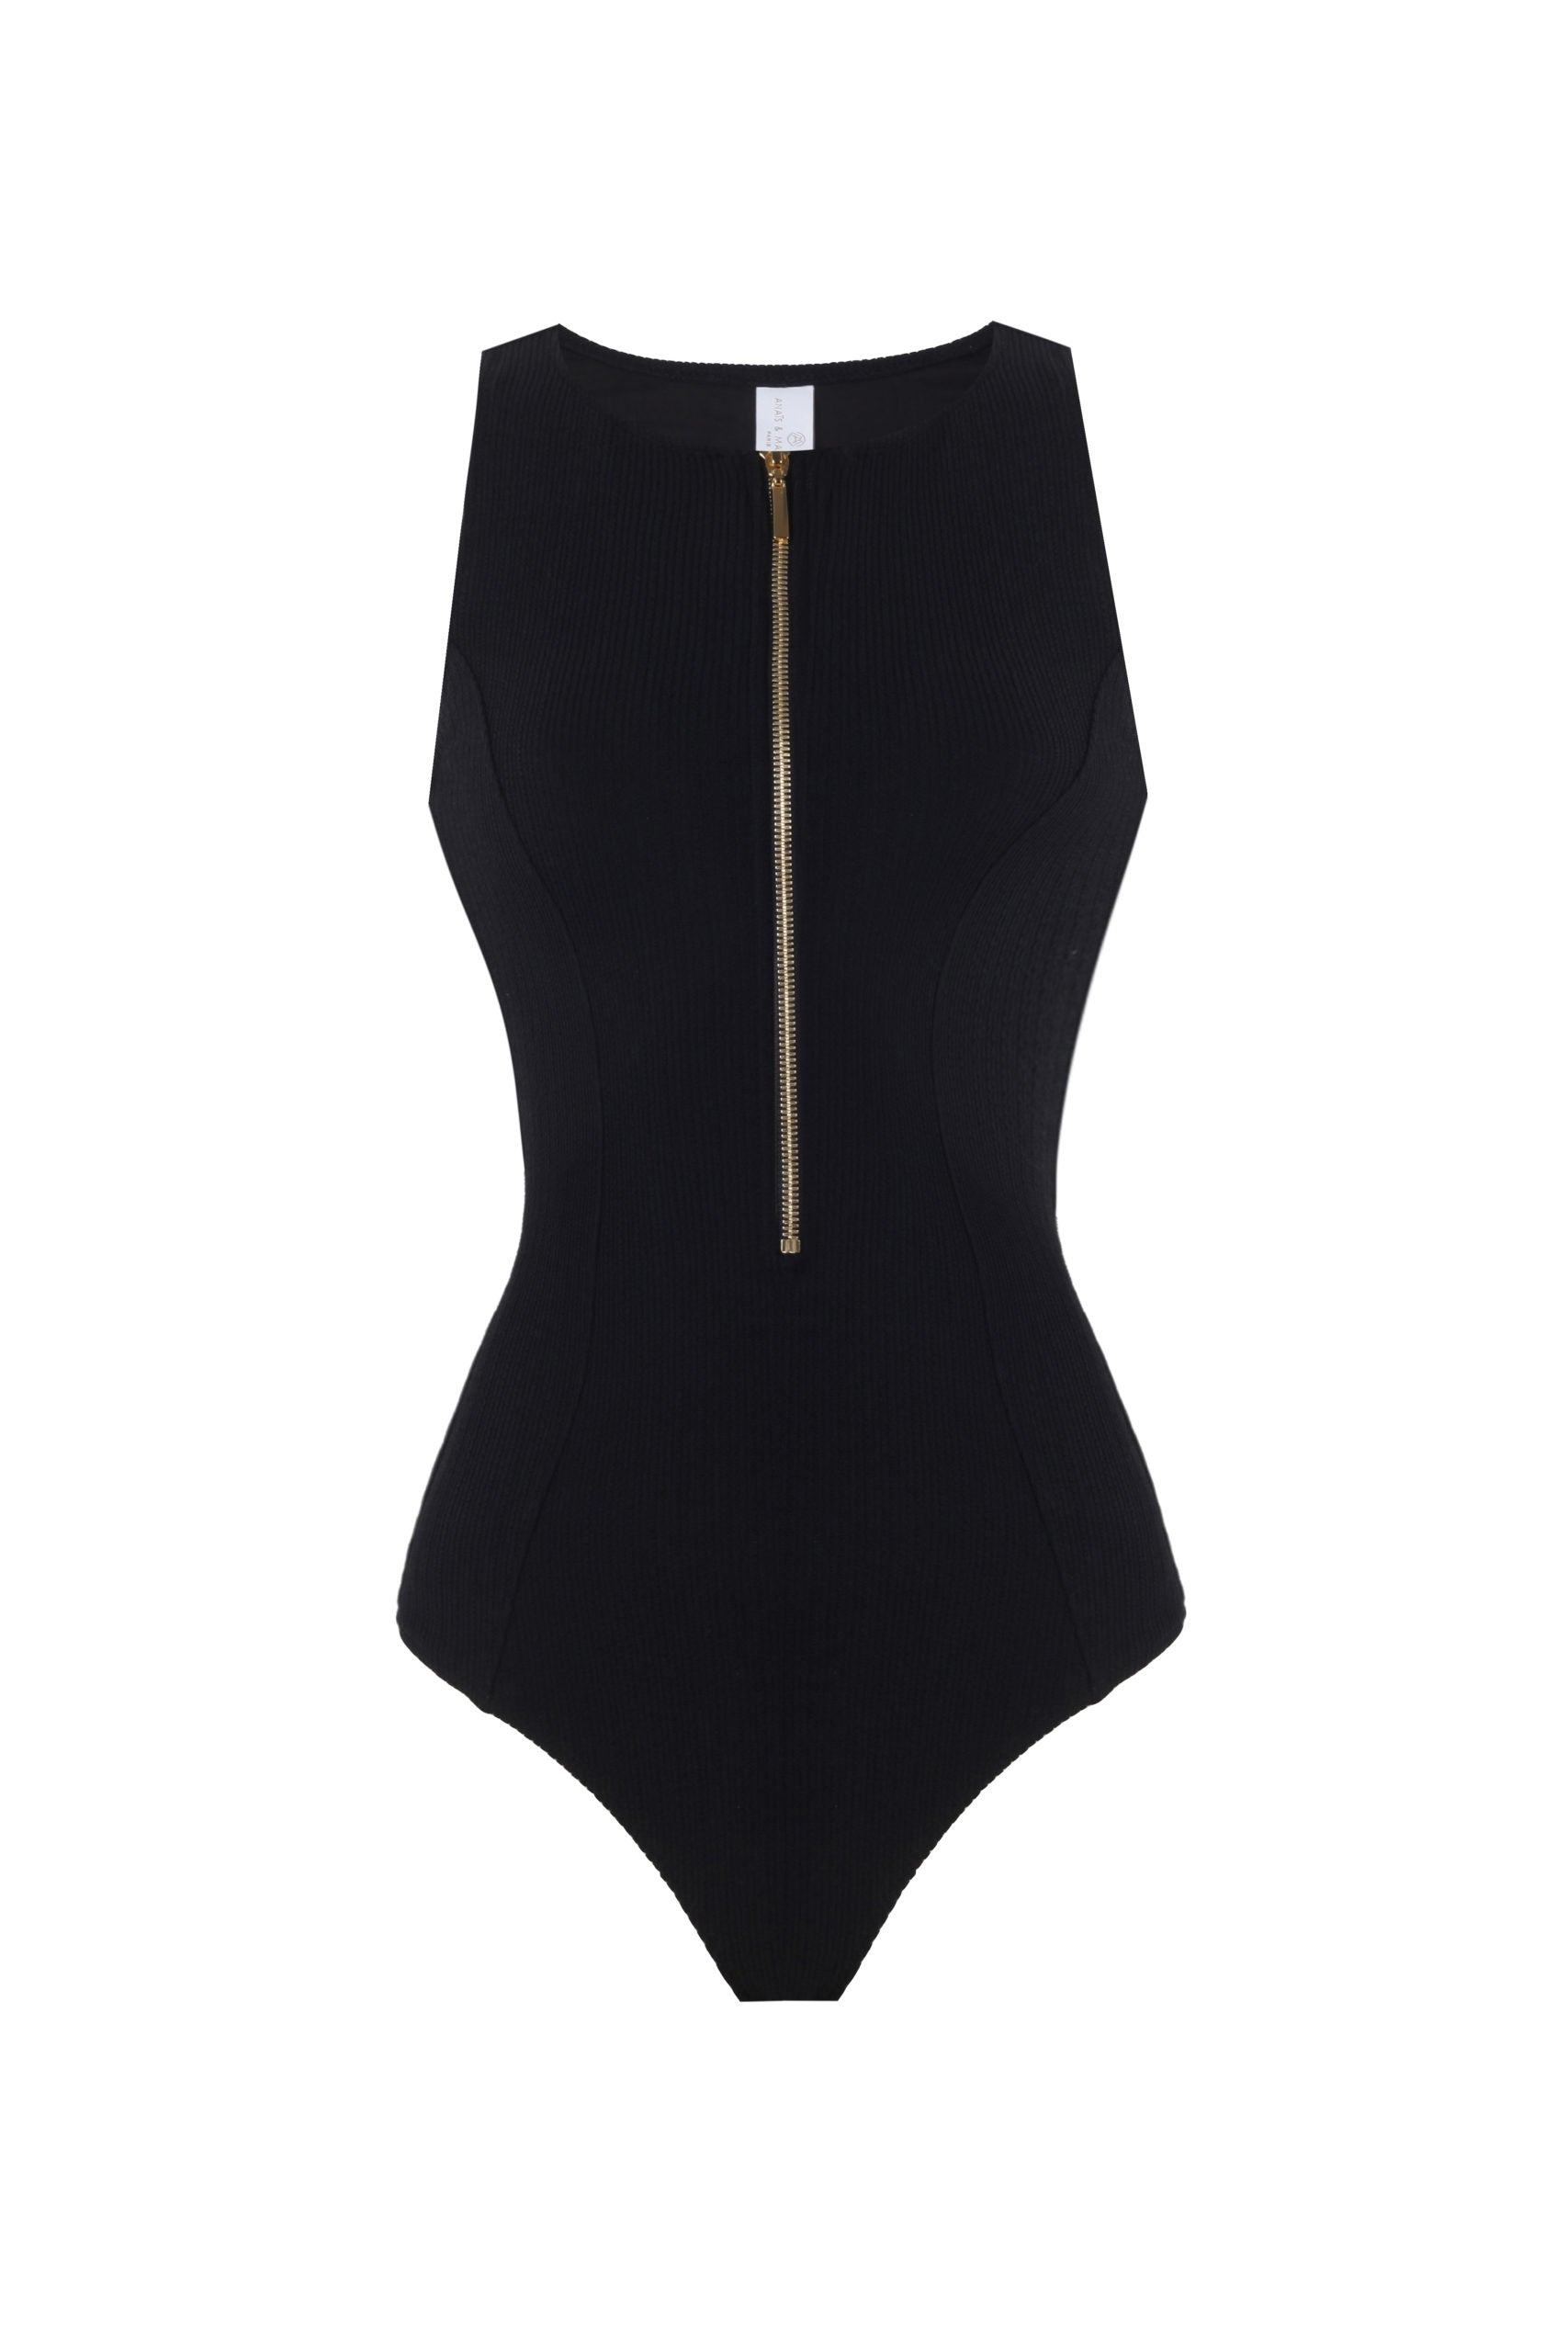 Clarette Black Textured Swimsuit